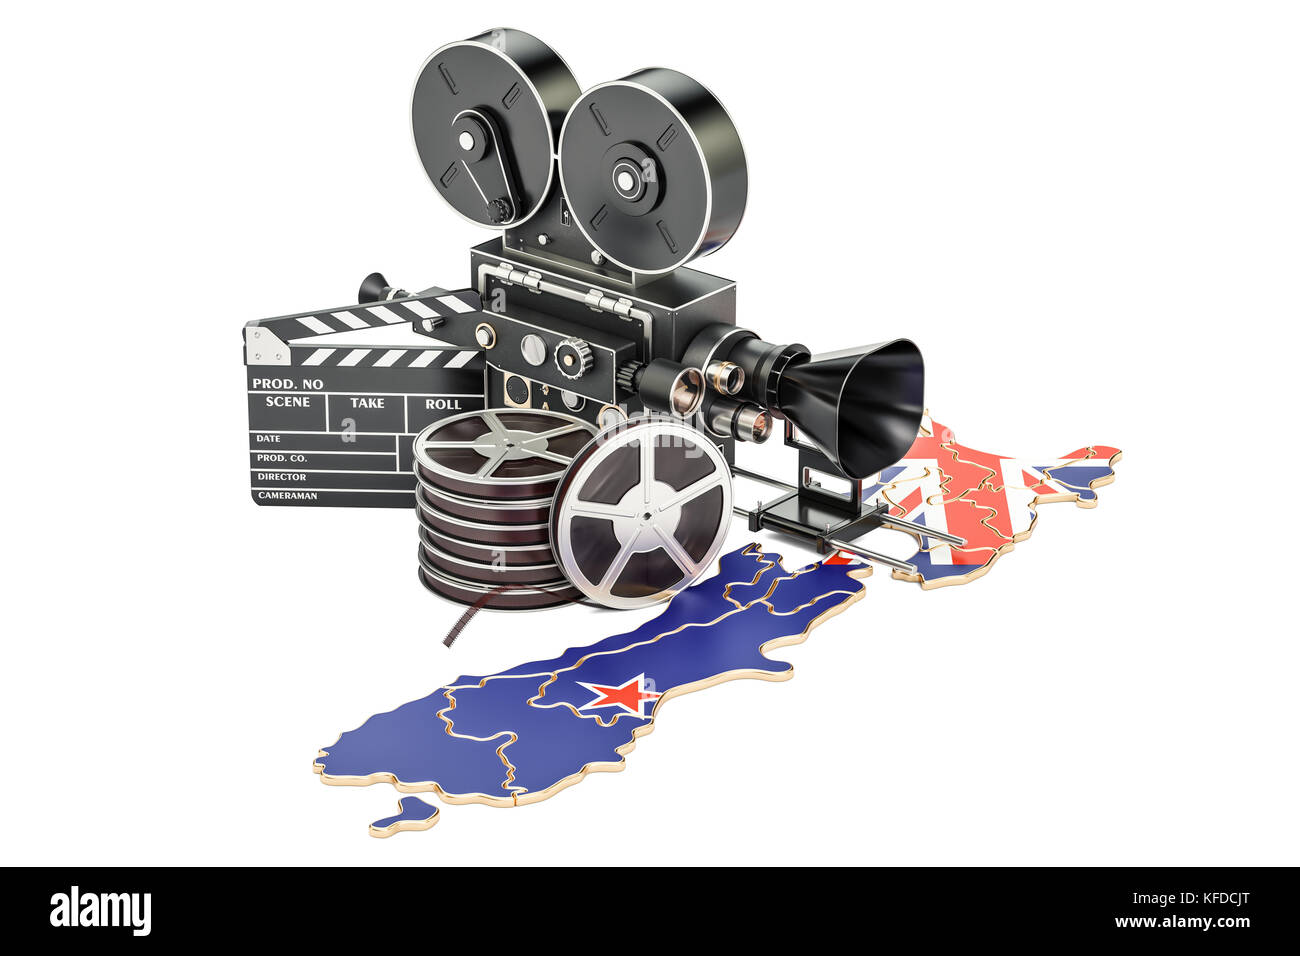 Neuseeland Kinematographie, Filmindustrie Konzept. 3D-Rendering auf weißem Hintergrund Stockfoto